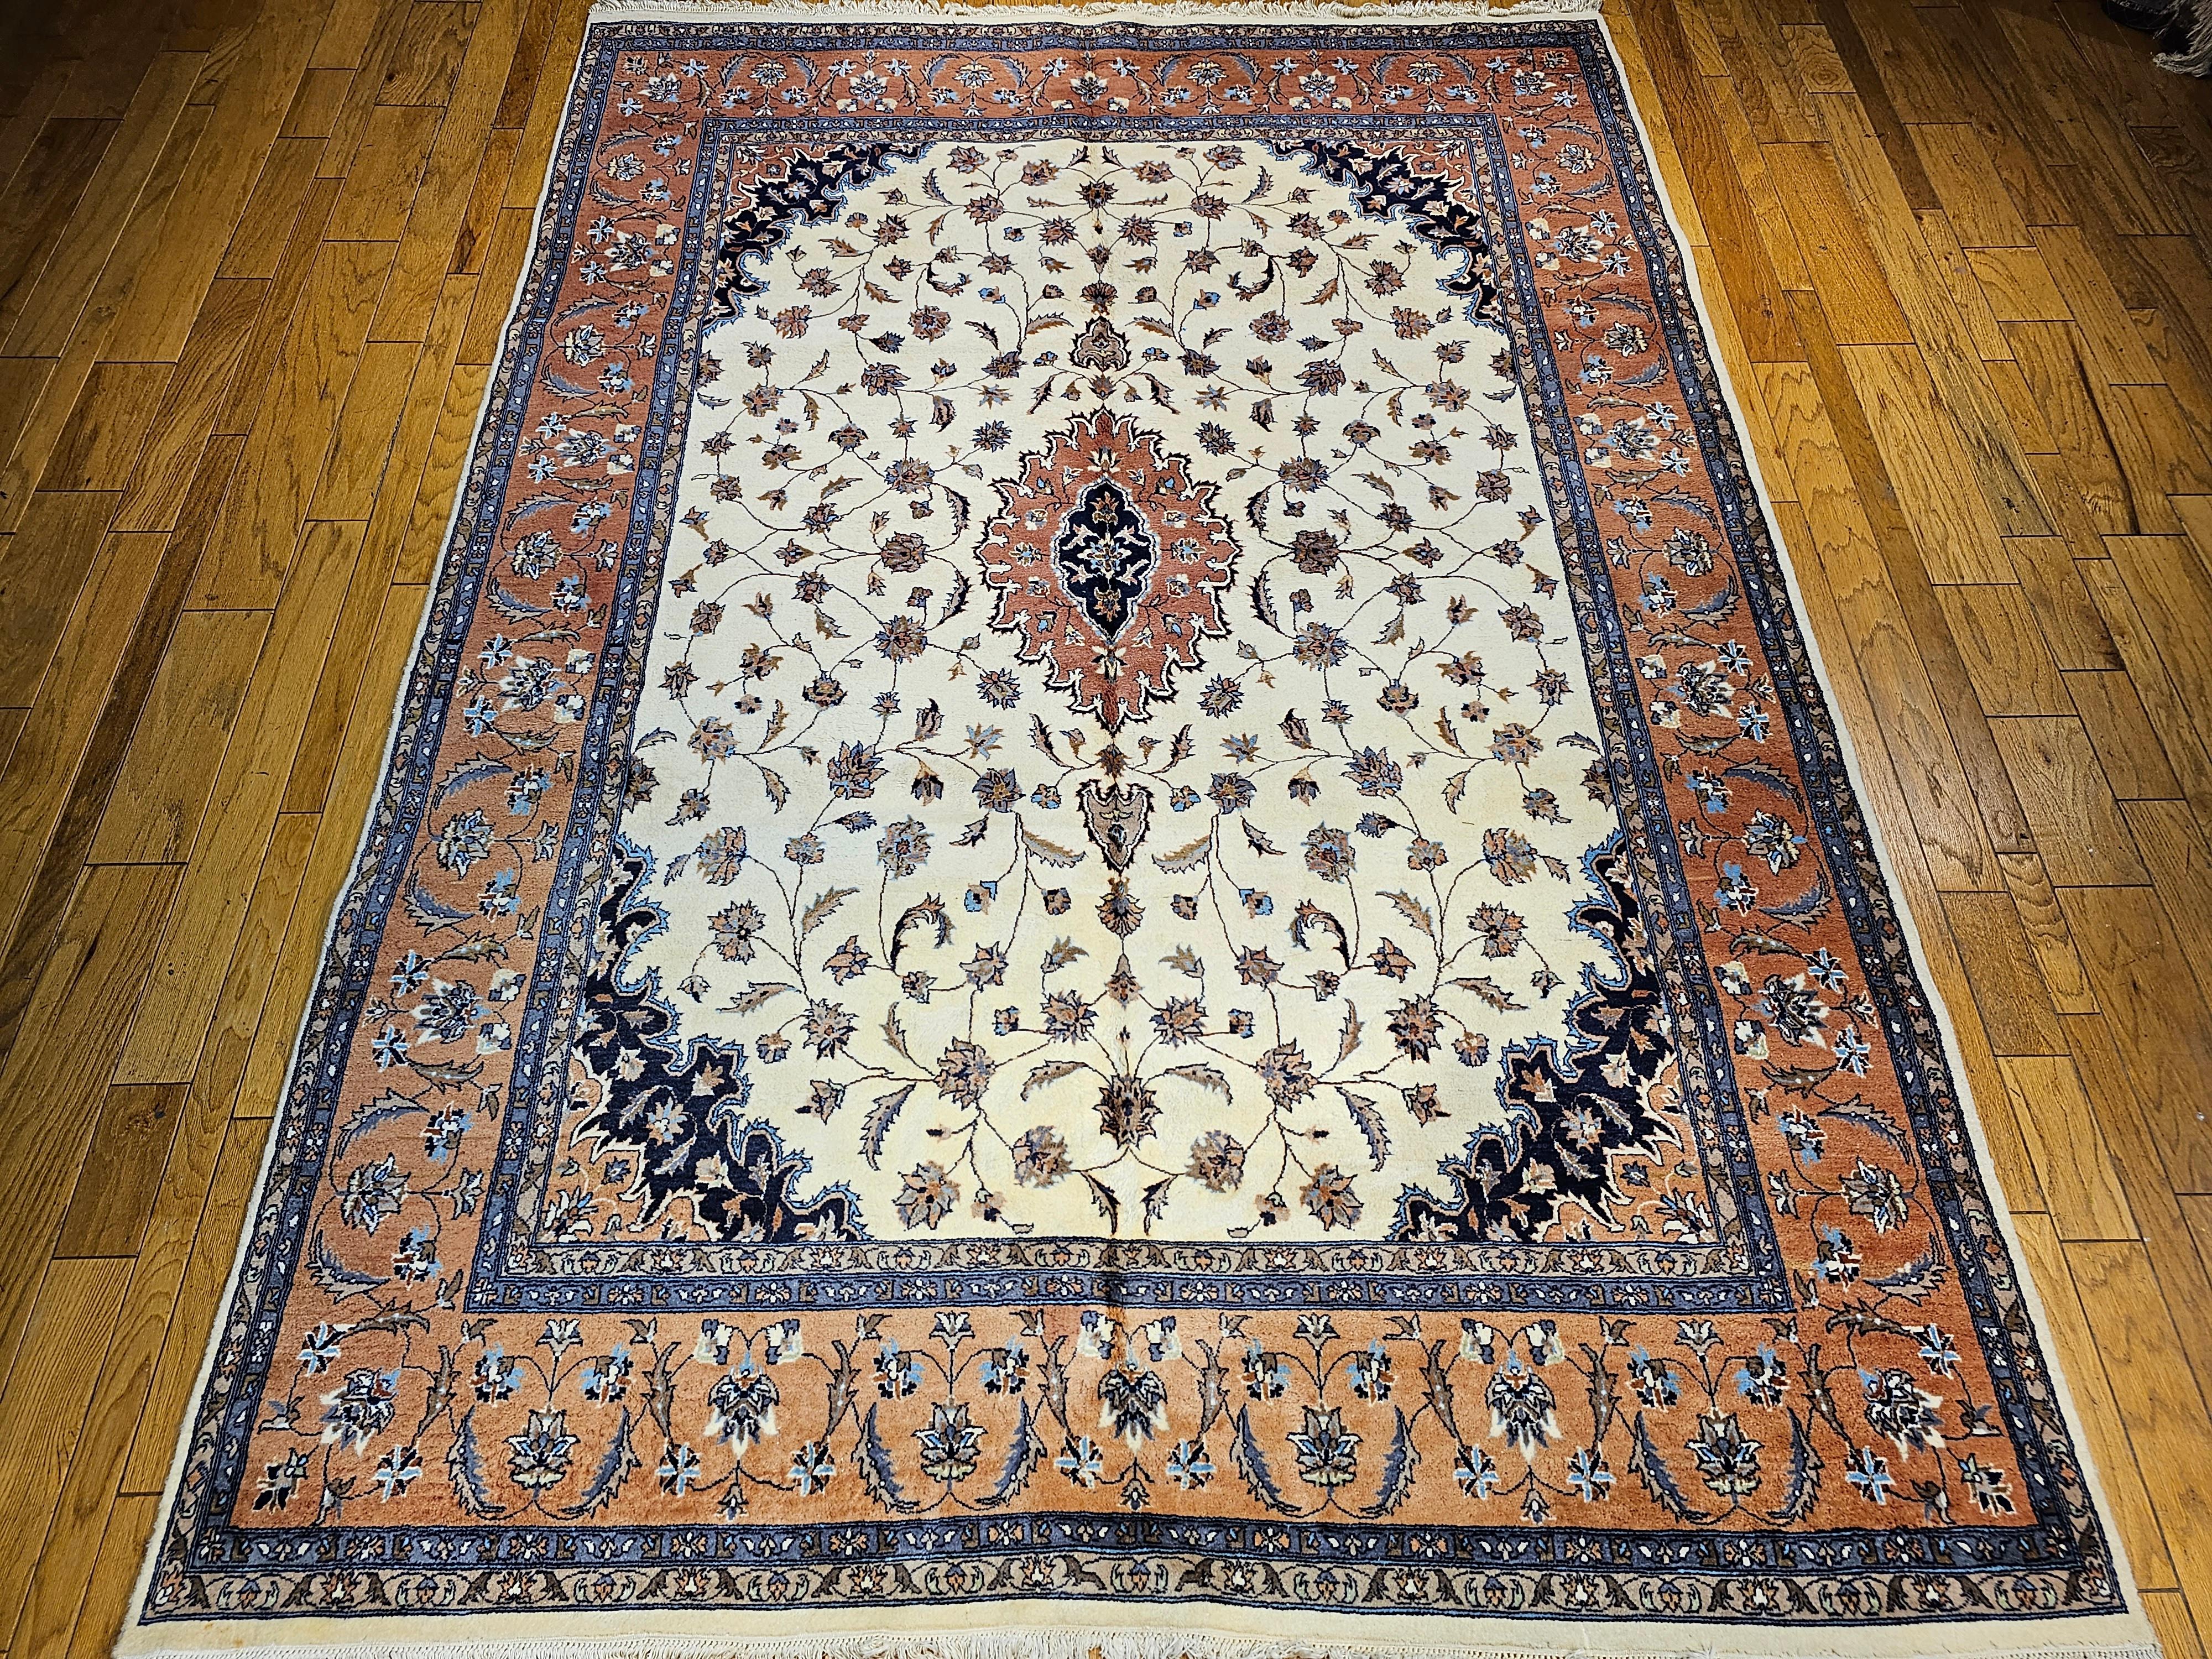 Vintage handgeknüpft Tabriz Design Teppich in Zimmergröße in einem floralen Muster in Elfenbein, Terrakotta rot, marineblau und braun aus dem 4. Quartal der 1900er Jahre. Der Teppich hat ein elfenbeinfarbenes Feld mit einer terrakotta- oder